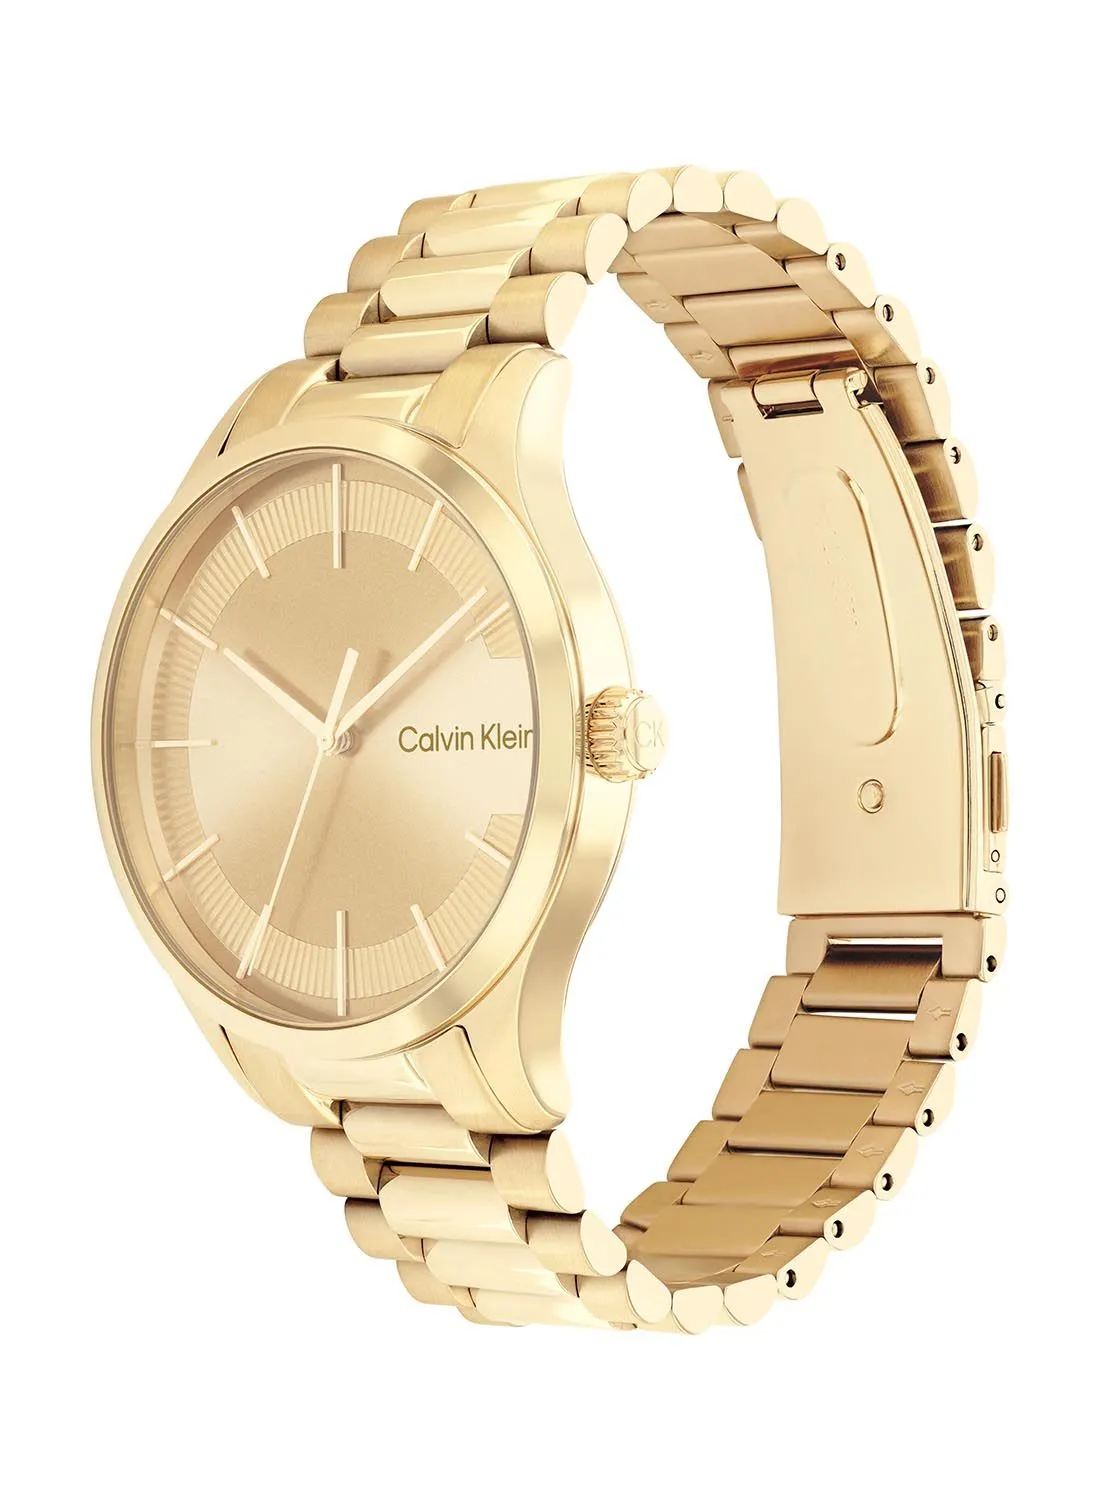 CALVIN KLEIN Analog Round Waterproof  Wrist Watch With Gold Strap 25200038